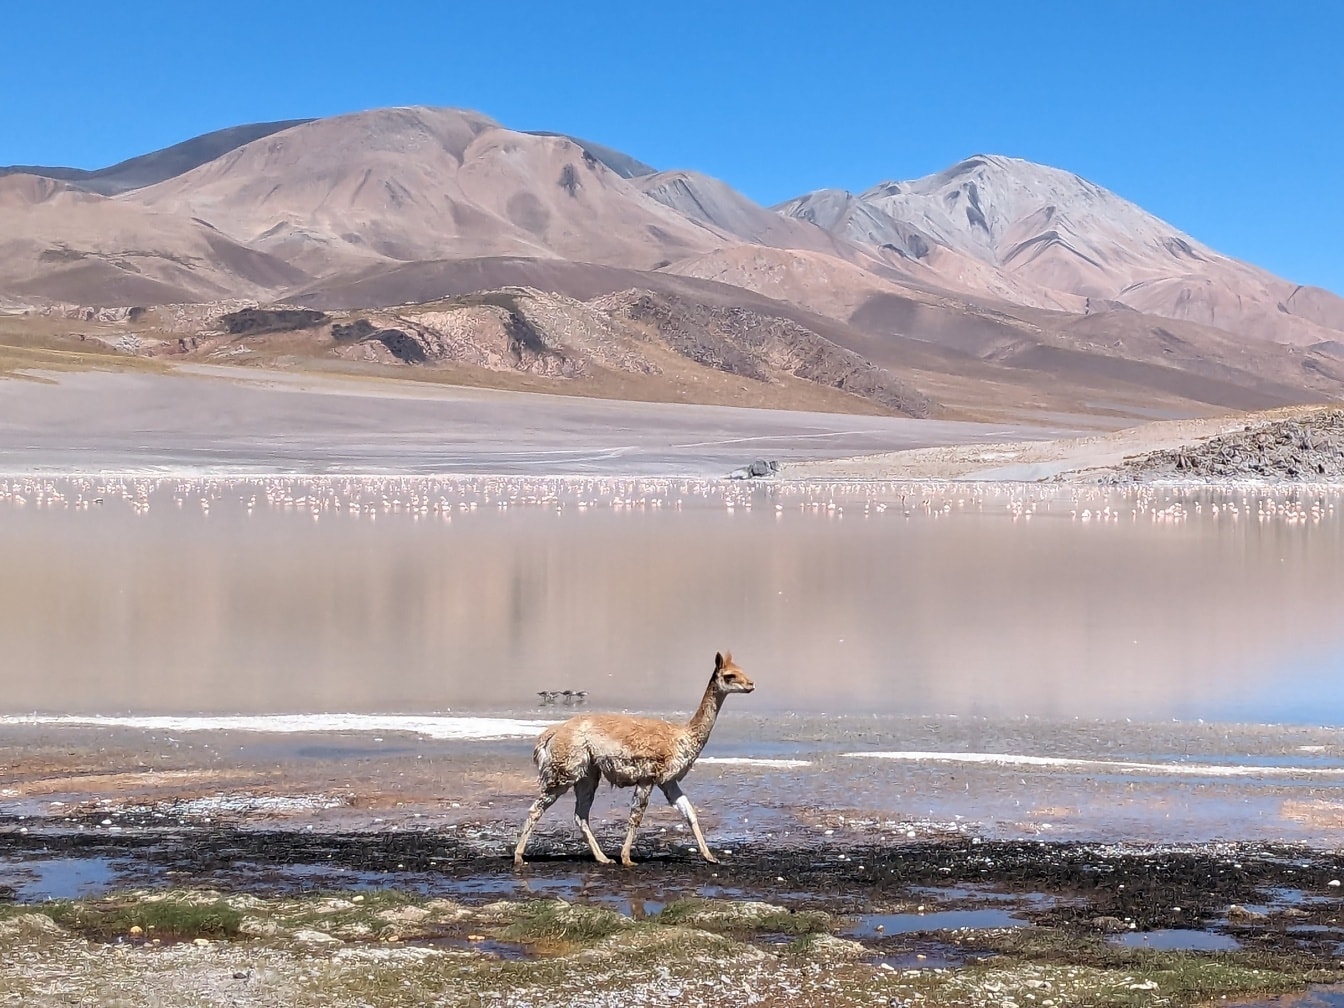 Lama salvaje caminando en una marisma, un oasis en el desierto en su hábitat natural